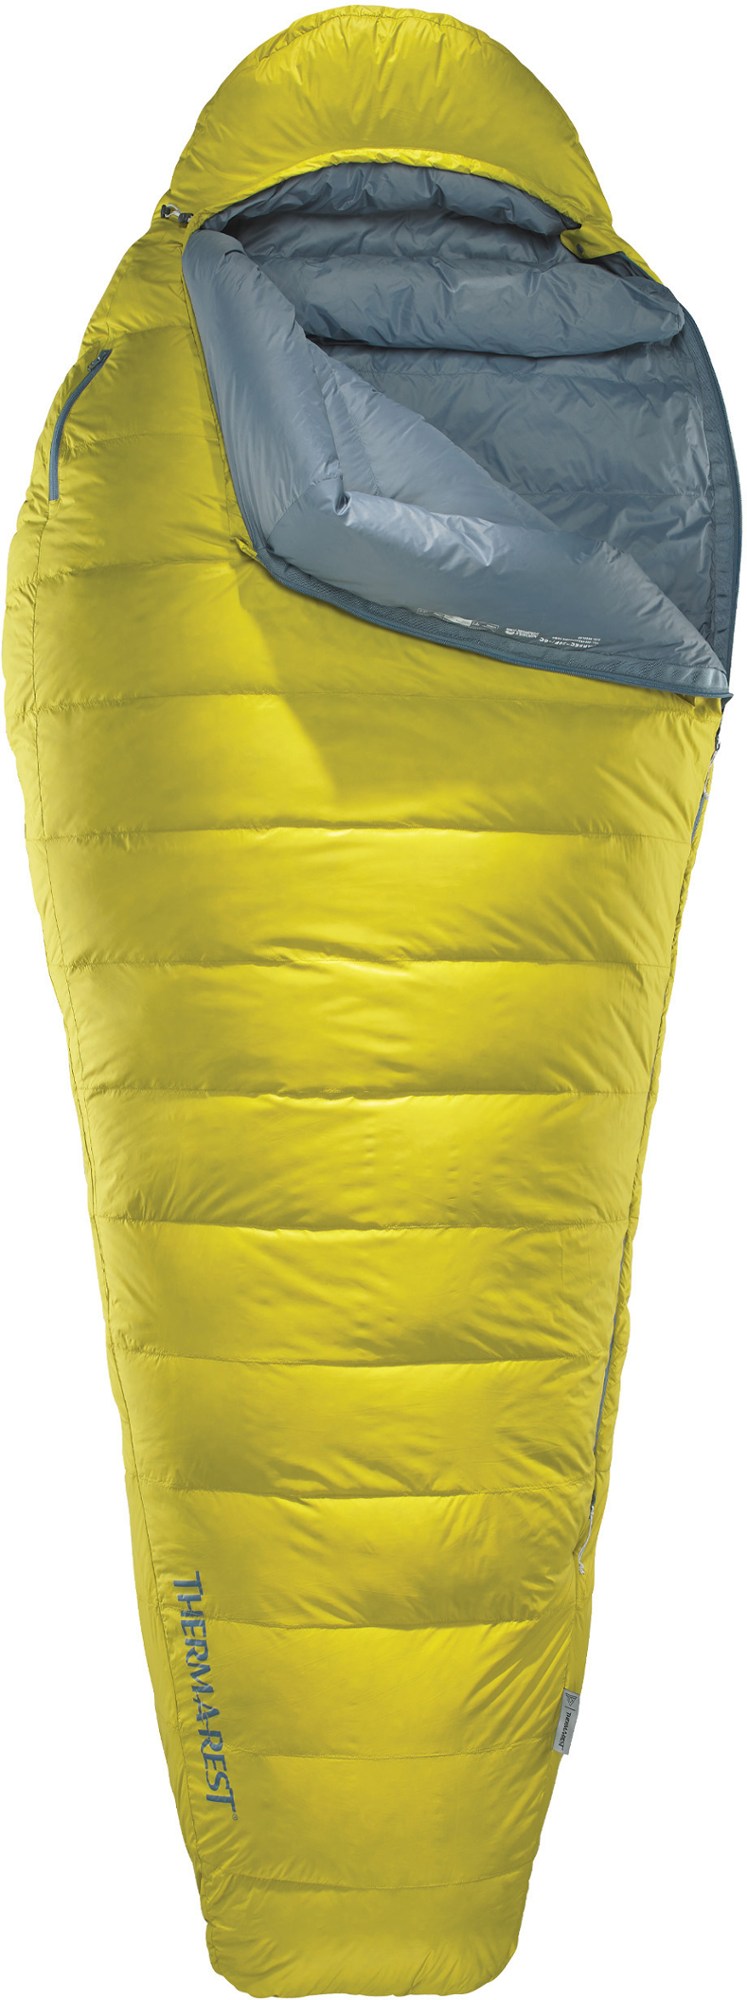 Спальный мешок Парсек 20 Therm-a-Rest, желтый фотографии